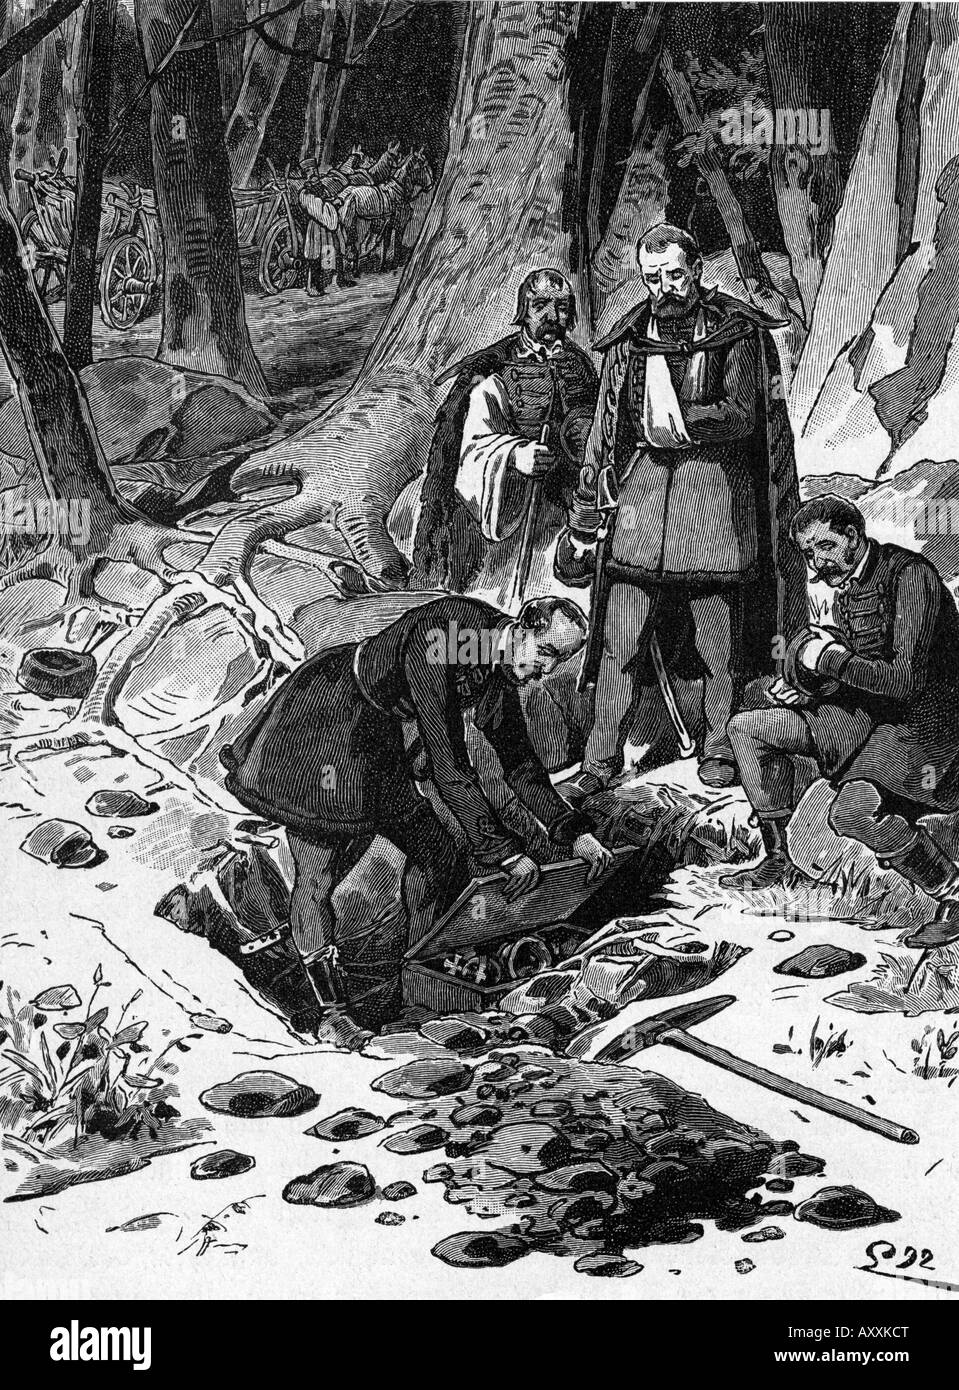 Kossuth, Lajos 16.9.1802 - 20.3.1894, ungarischer Politiker, der die ungarischen Regalien begraben hat, August 1849, Holzgravur, 1893, Stockfoto